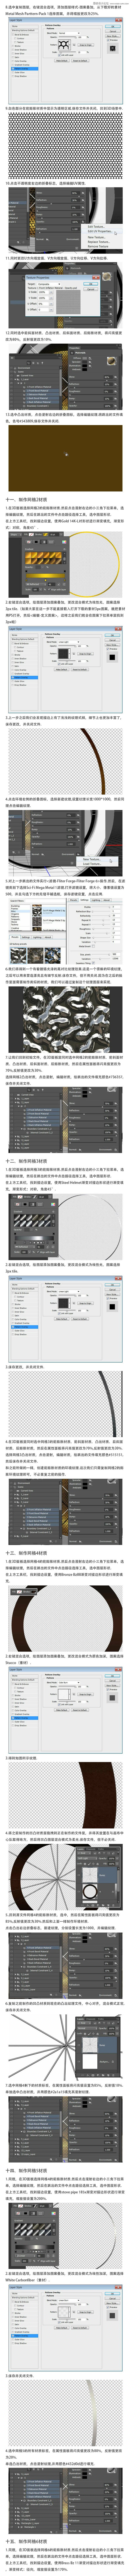 Photoshop制作炫酷的3D金属字体教程,PS教程,素材中国网